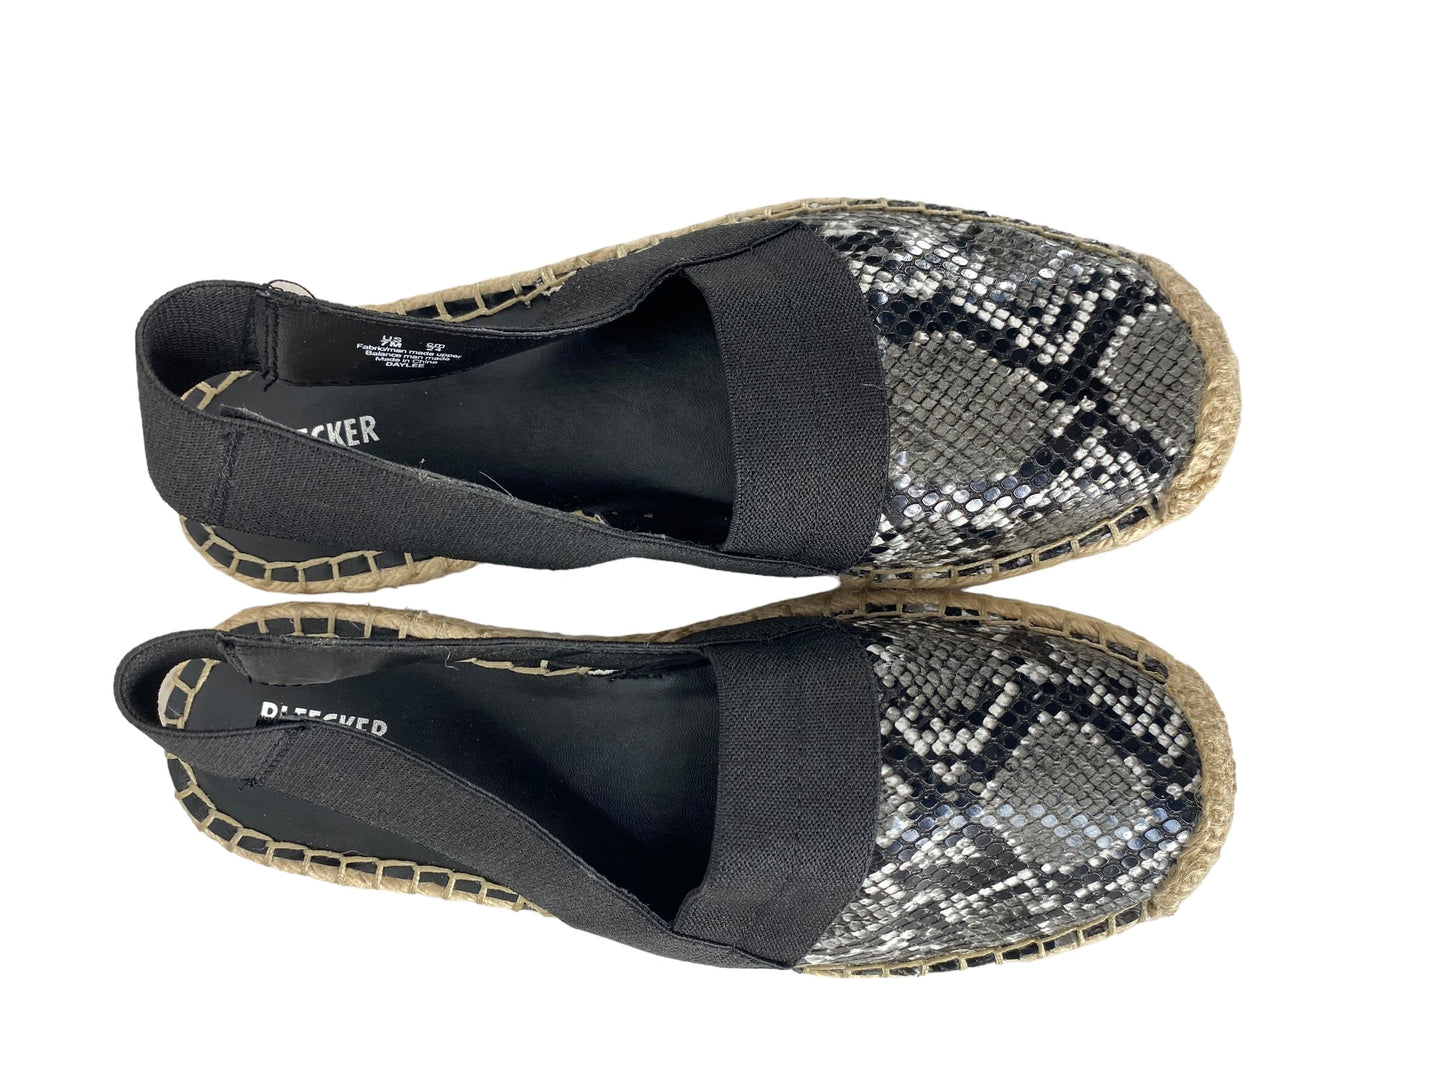 Animal Print Sandals Flats Bleecker & Bond, Size 7